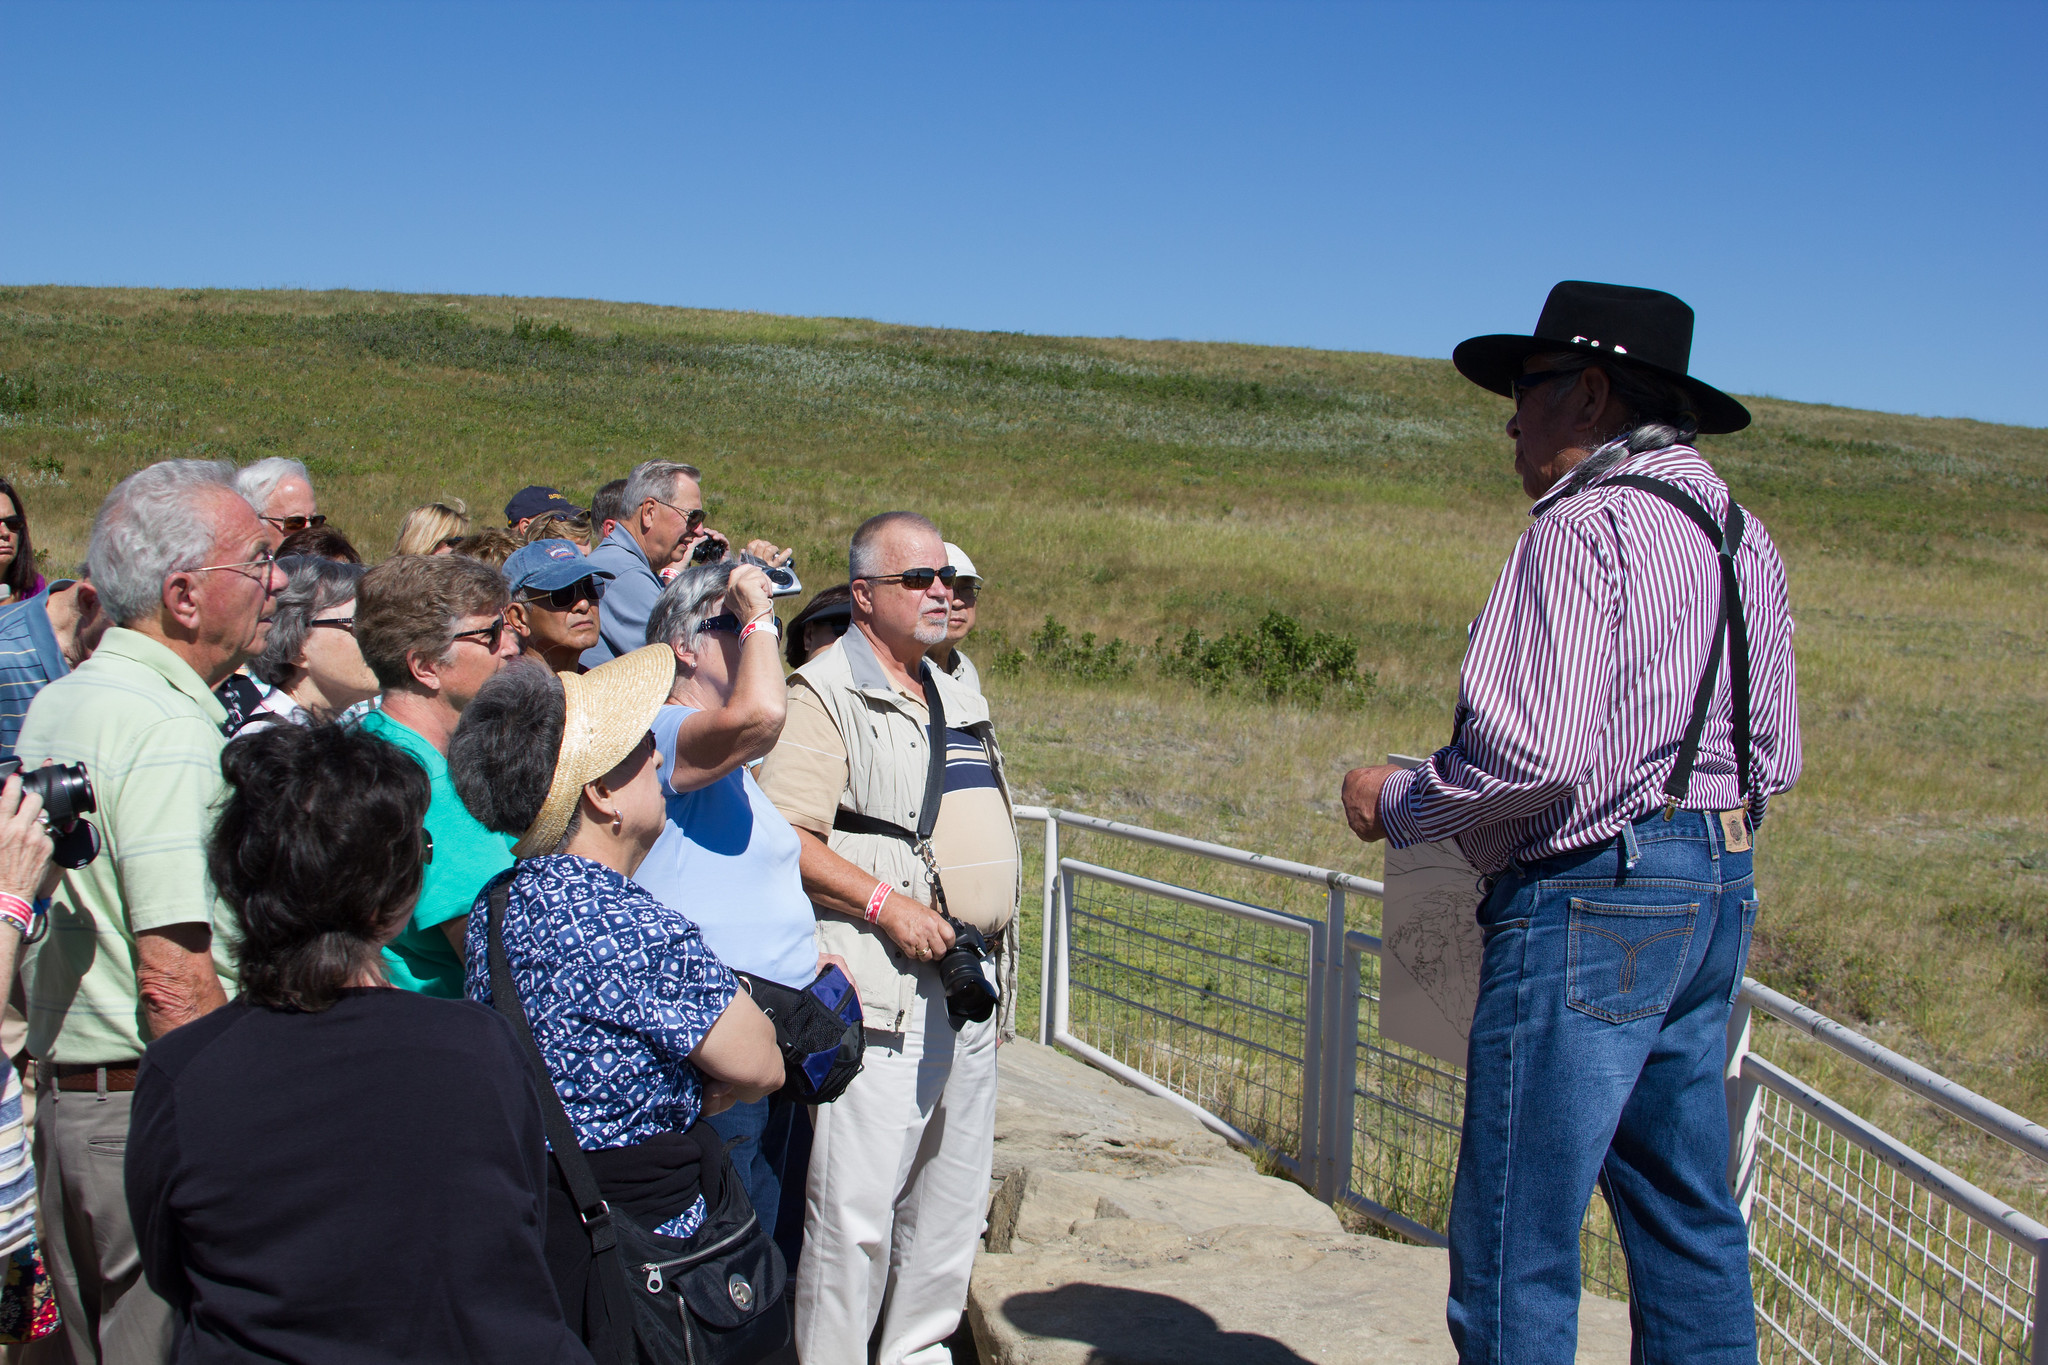 Turistas se reúnen alrededor de un hombre con sombrero vaquero junto a una cerca corta de metal frente a una llanura.